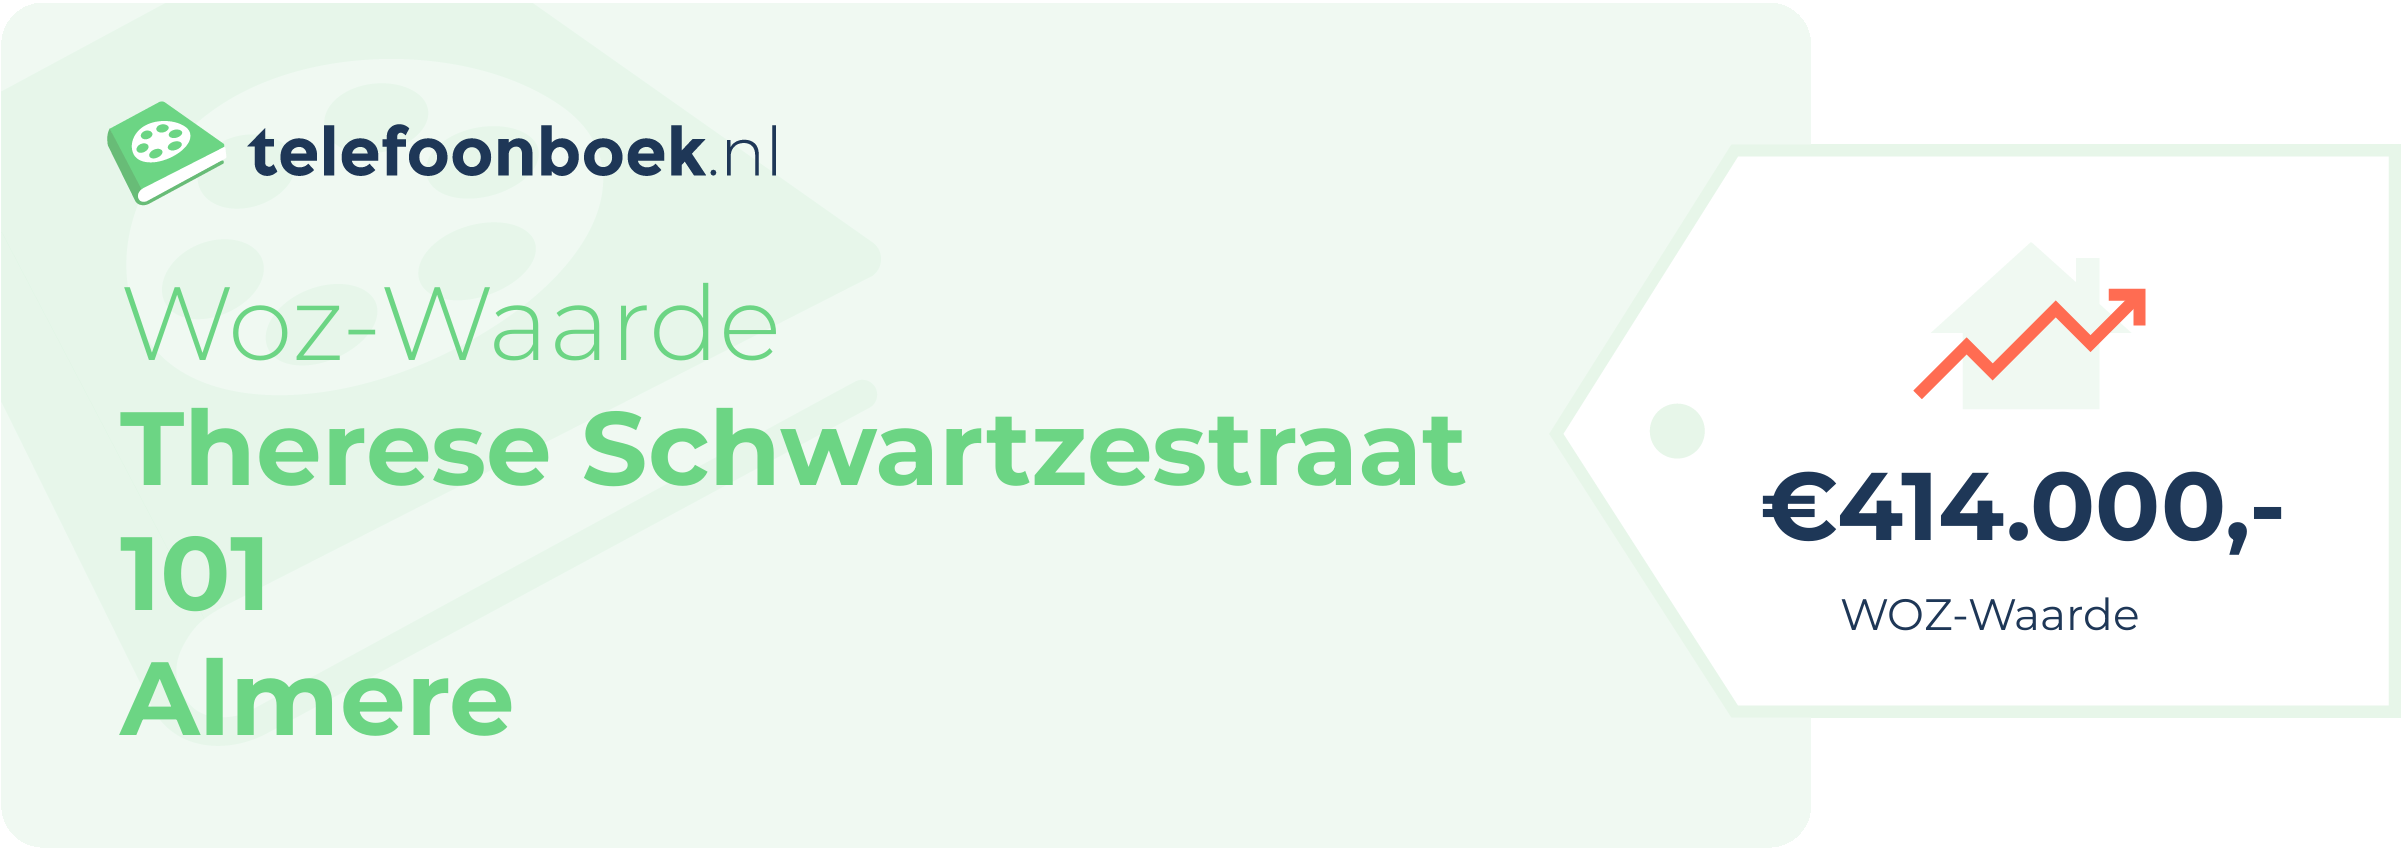 WOZ-waarde Therese Schwartzestraat 101 Almere